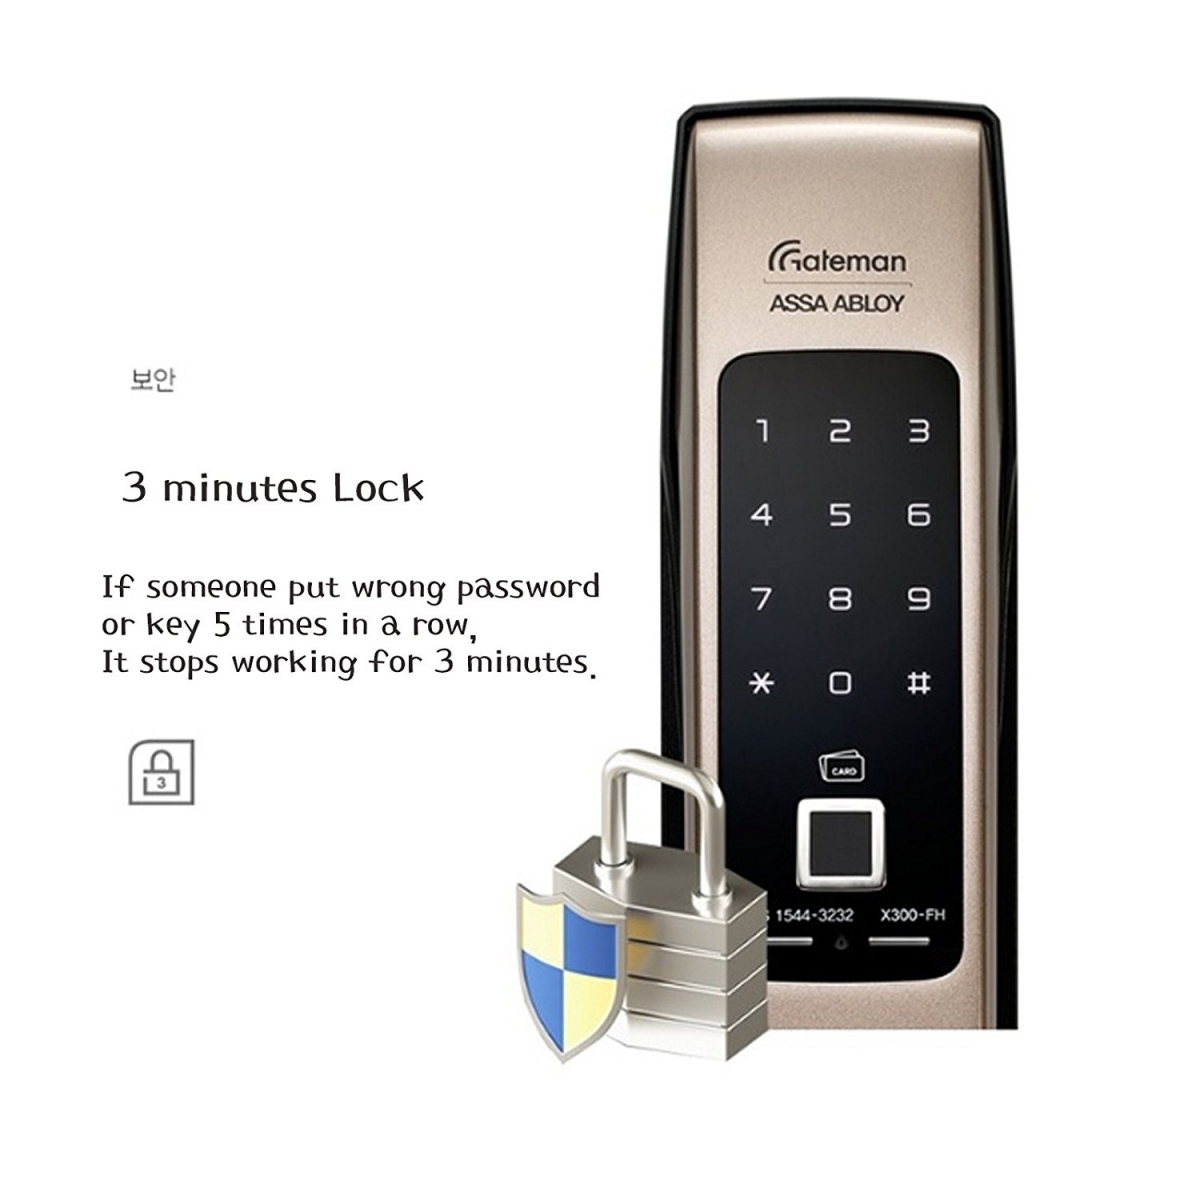 Gateman Smart Door Lock X300-FH